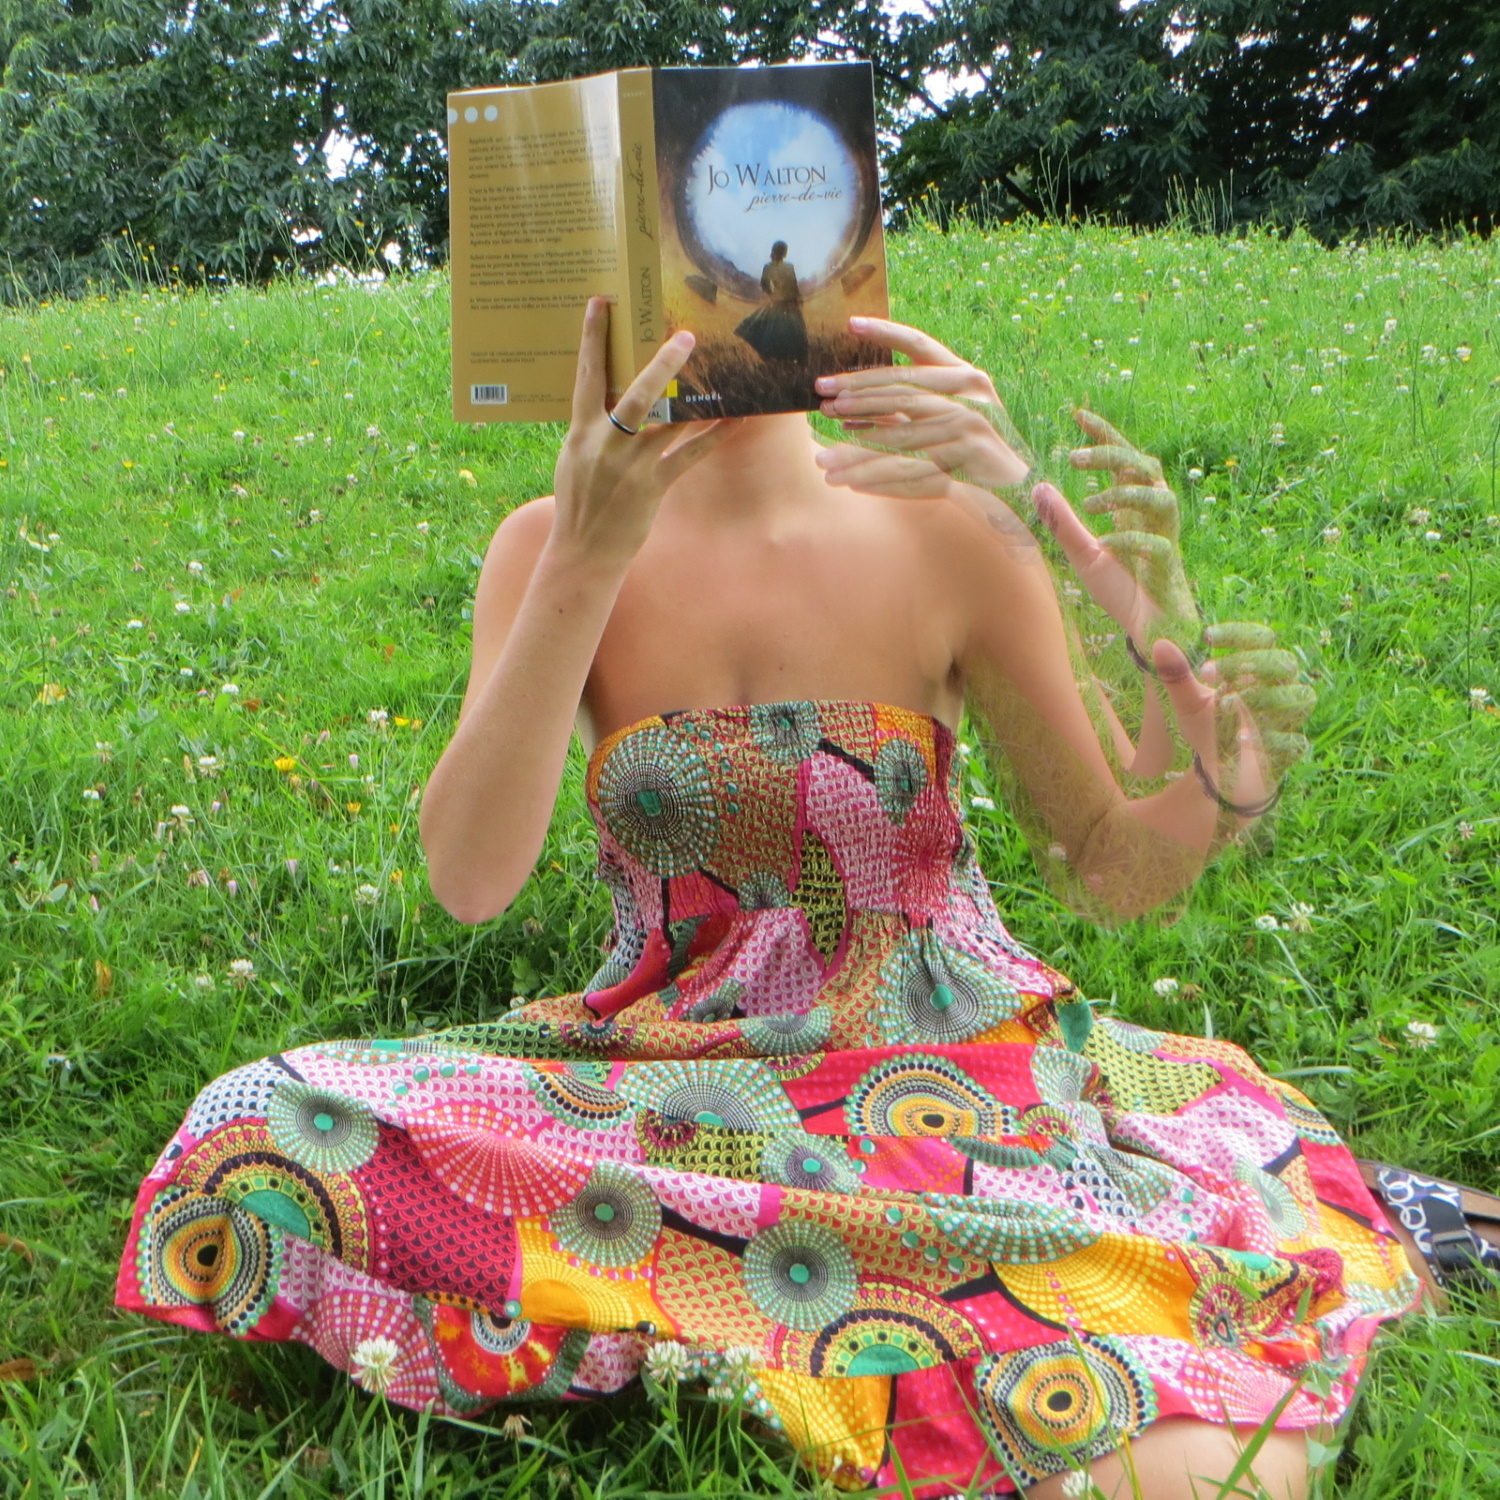 personne en robe colorée lisant Pierre-de-vie de Jo Walton dans l'herbe. On voit en transparence le mouvement de son bras